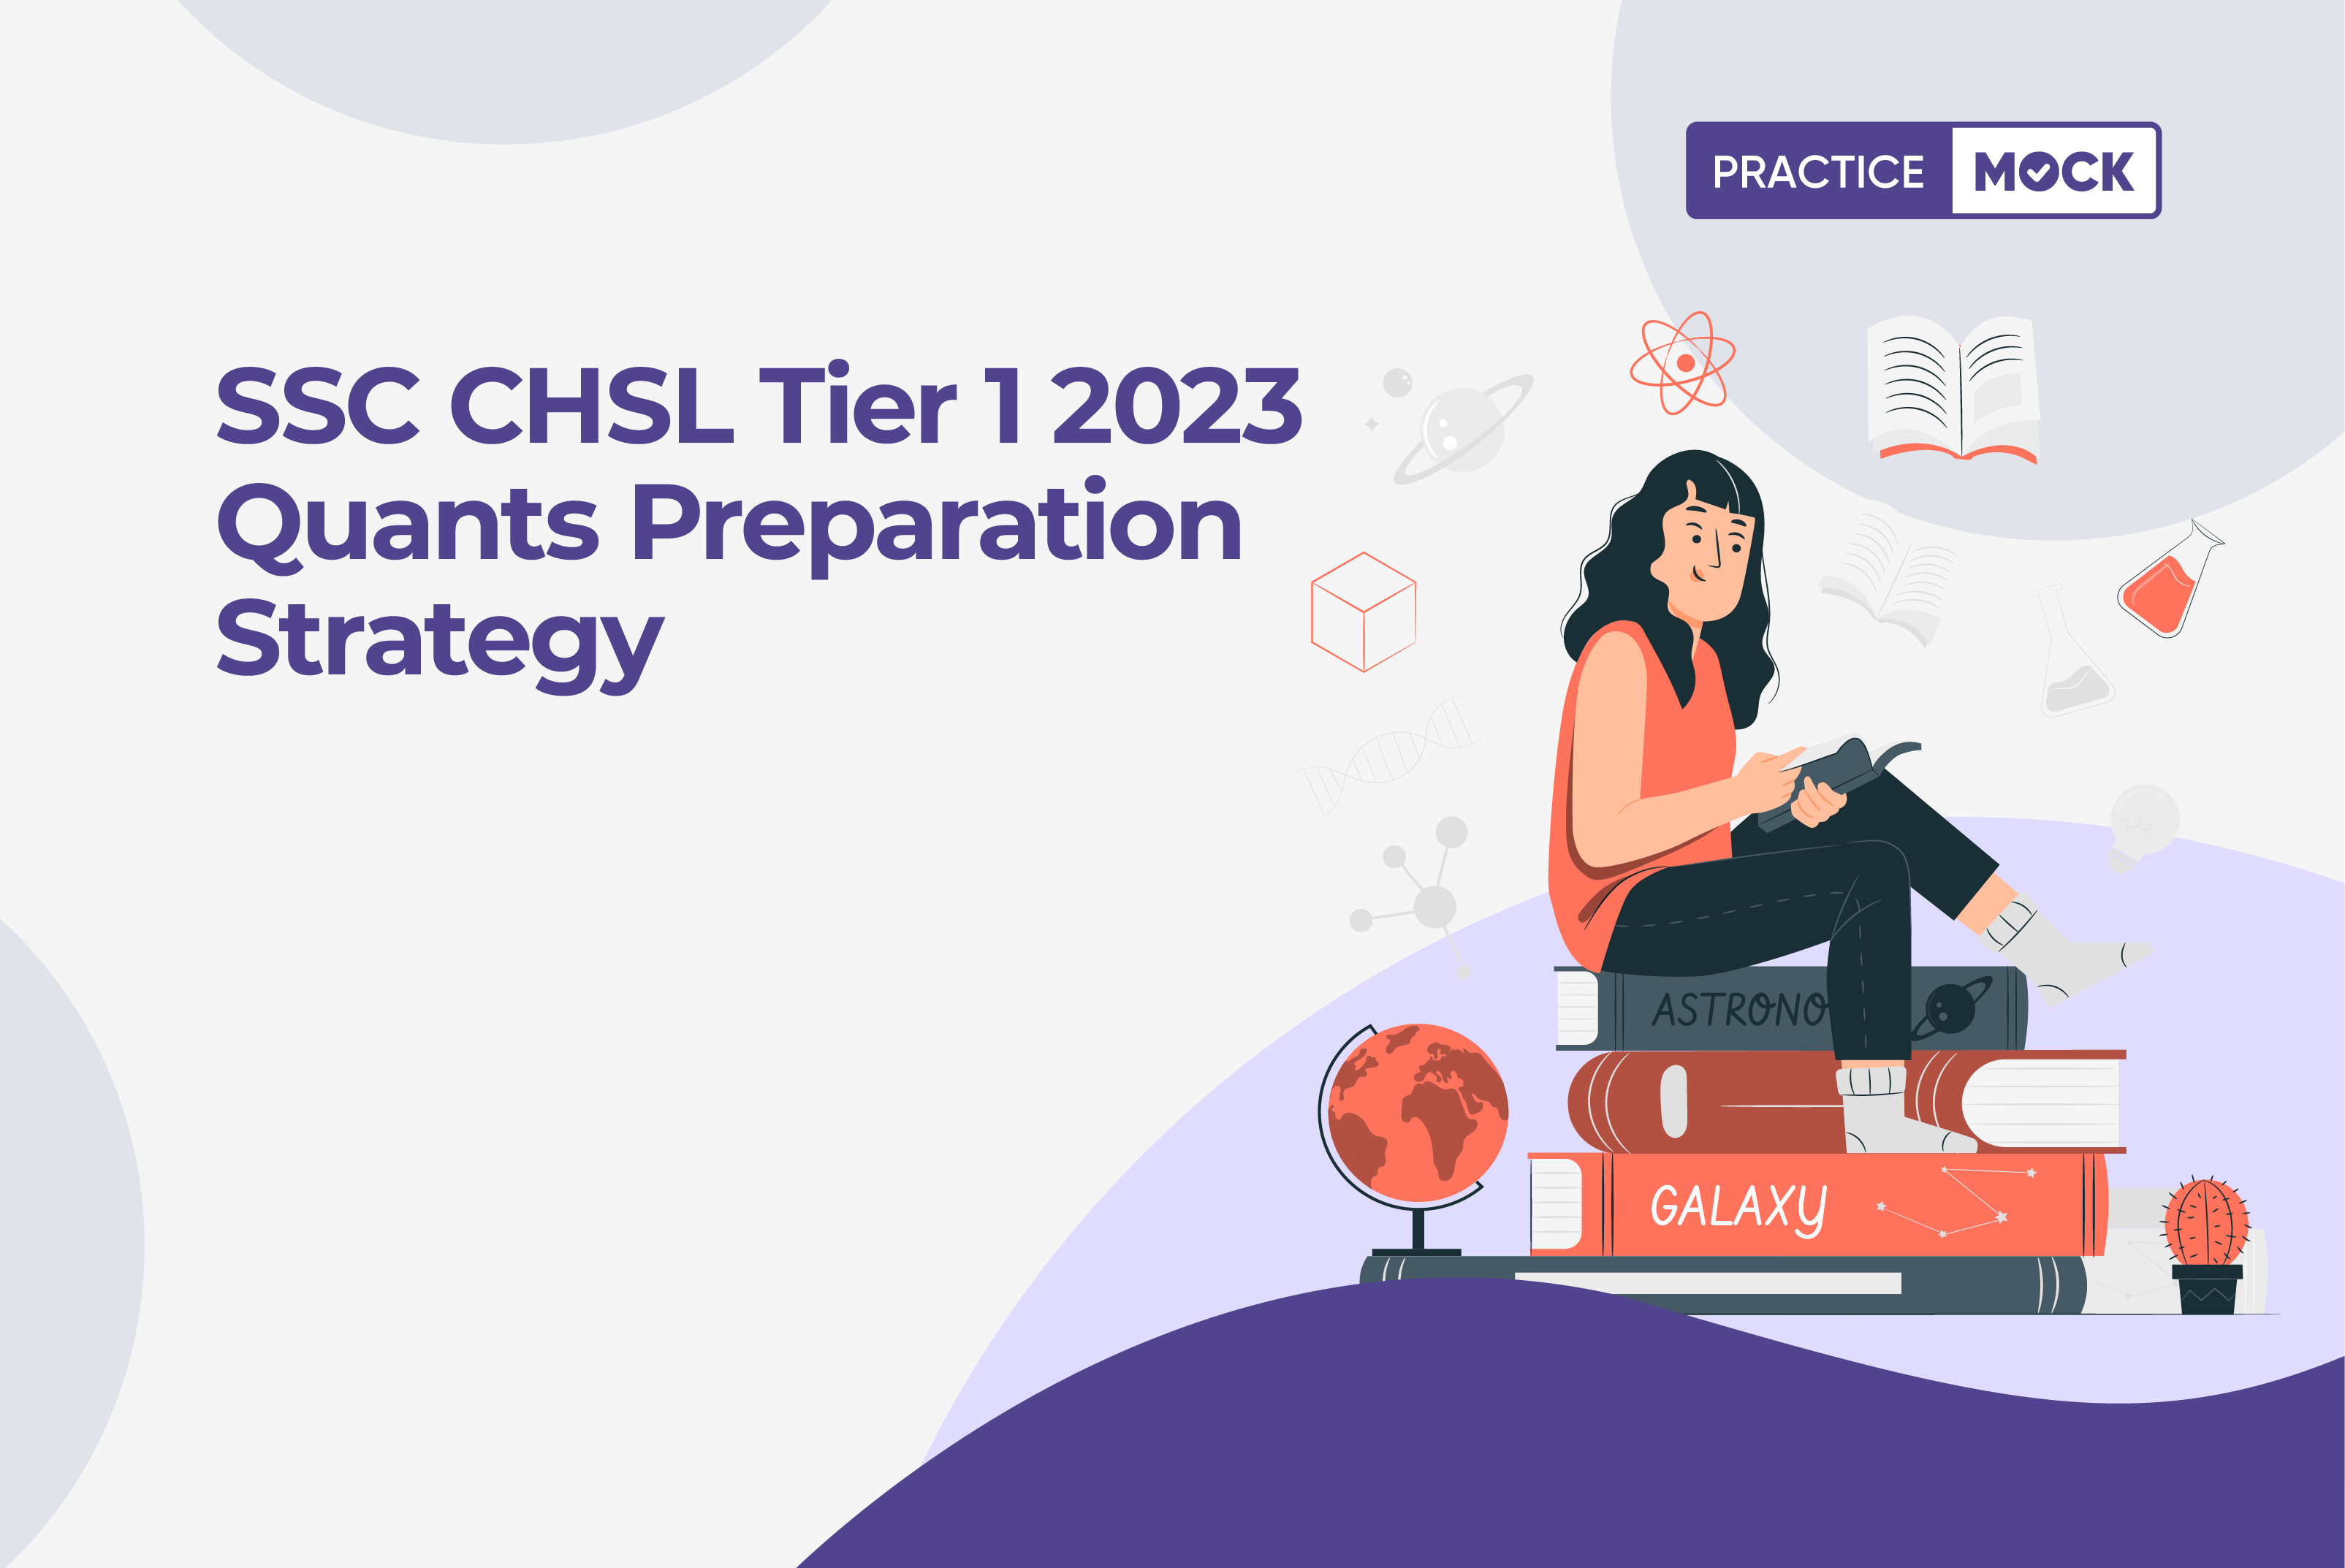 SSC CHSL Tier 1 2023 Quants Preparation Strategy